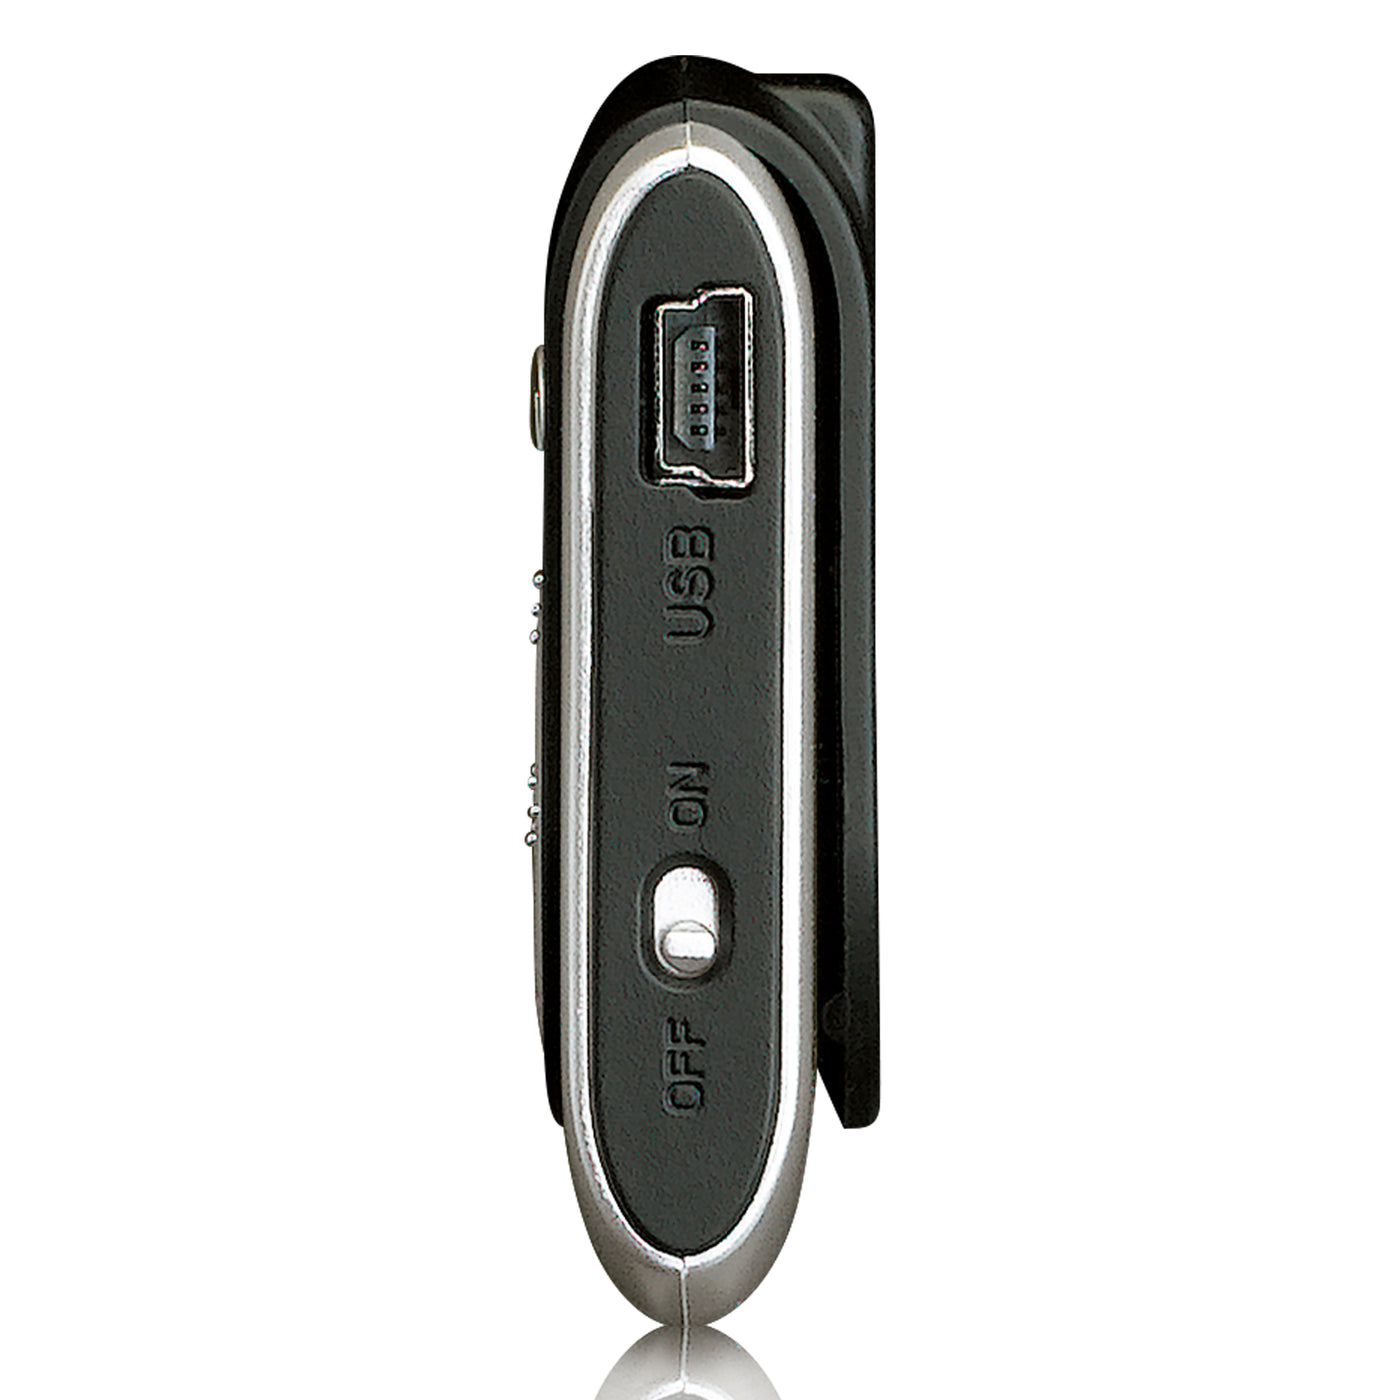 Ices IMP-101SI - Oplaadbare MP3 speler met SD-kaart slot en in-ear oortelefoon - Zilver